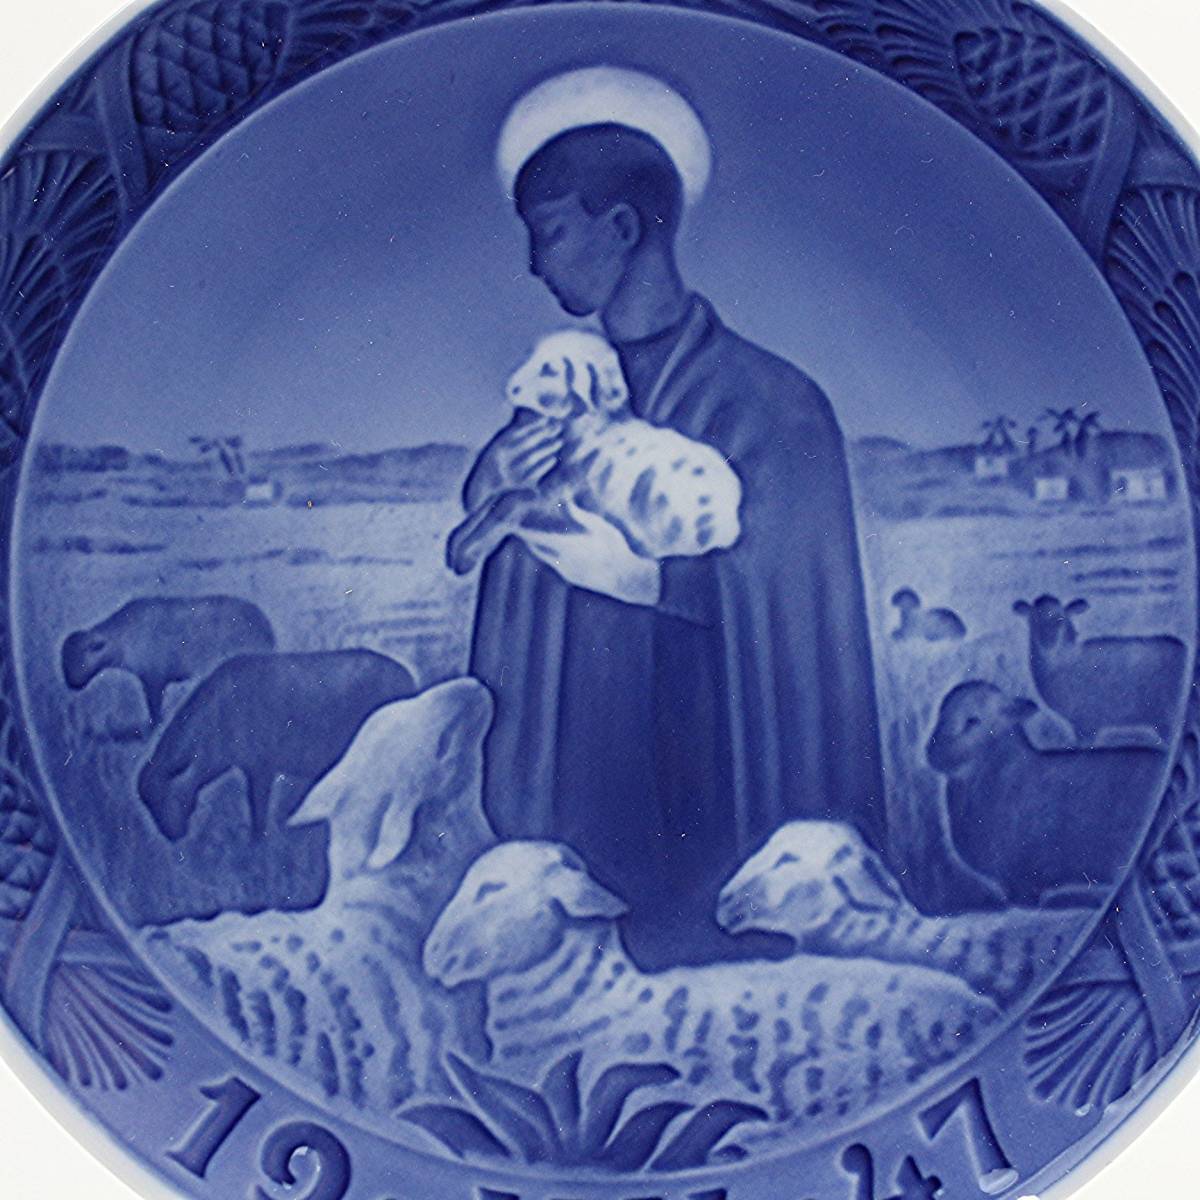 1947年 ロイヤルコペンハーゲン イヤープレート 「善き羊飼い」 北欧 デンマーク の 陶磁器 wwww8_1947年イヤープレート「善き羊飼い」